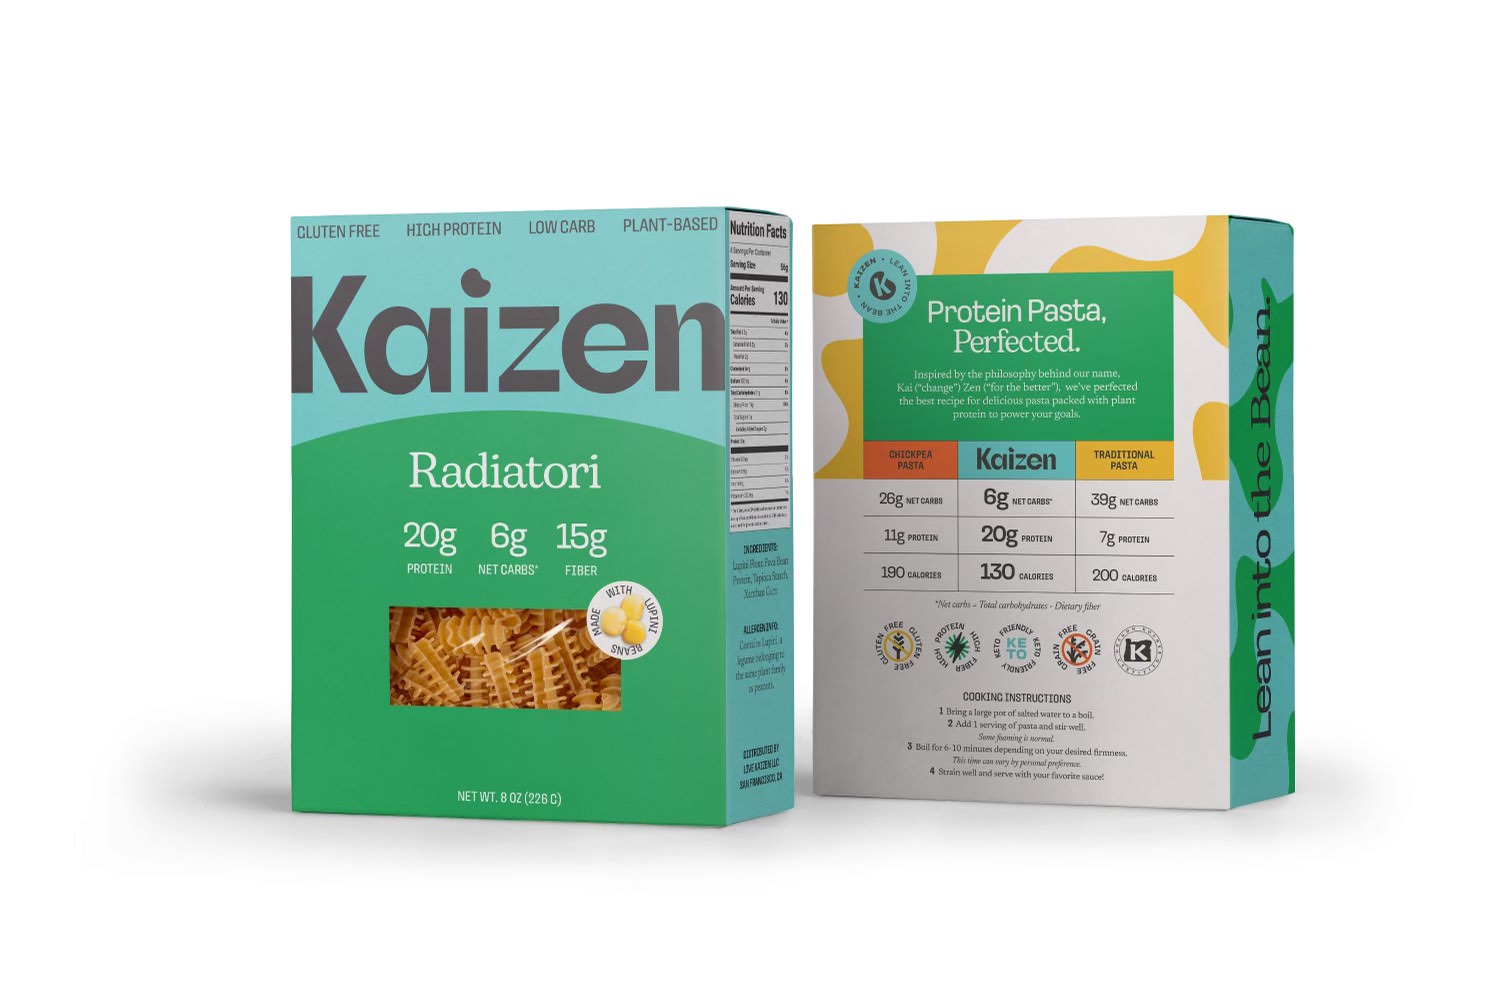 Kaizen Pasta - Radiatori 22 units per case 8.0 oz